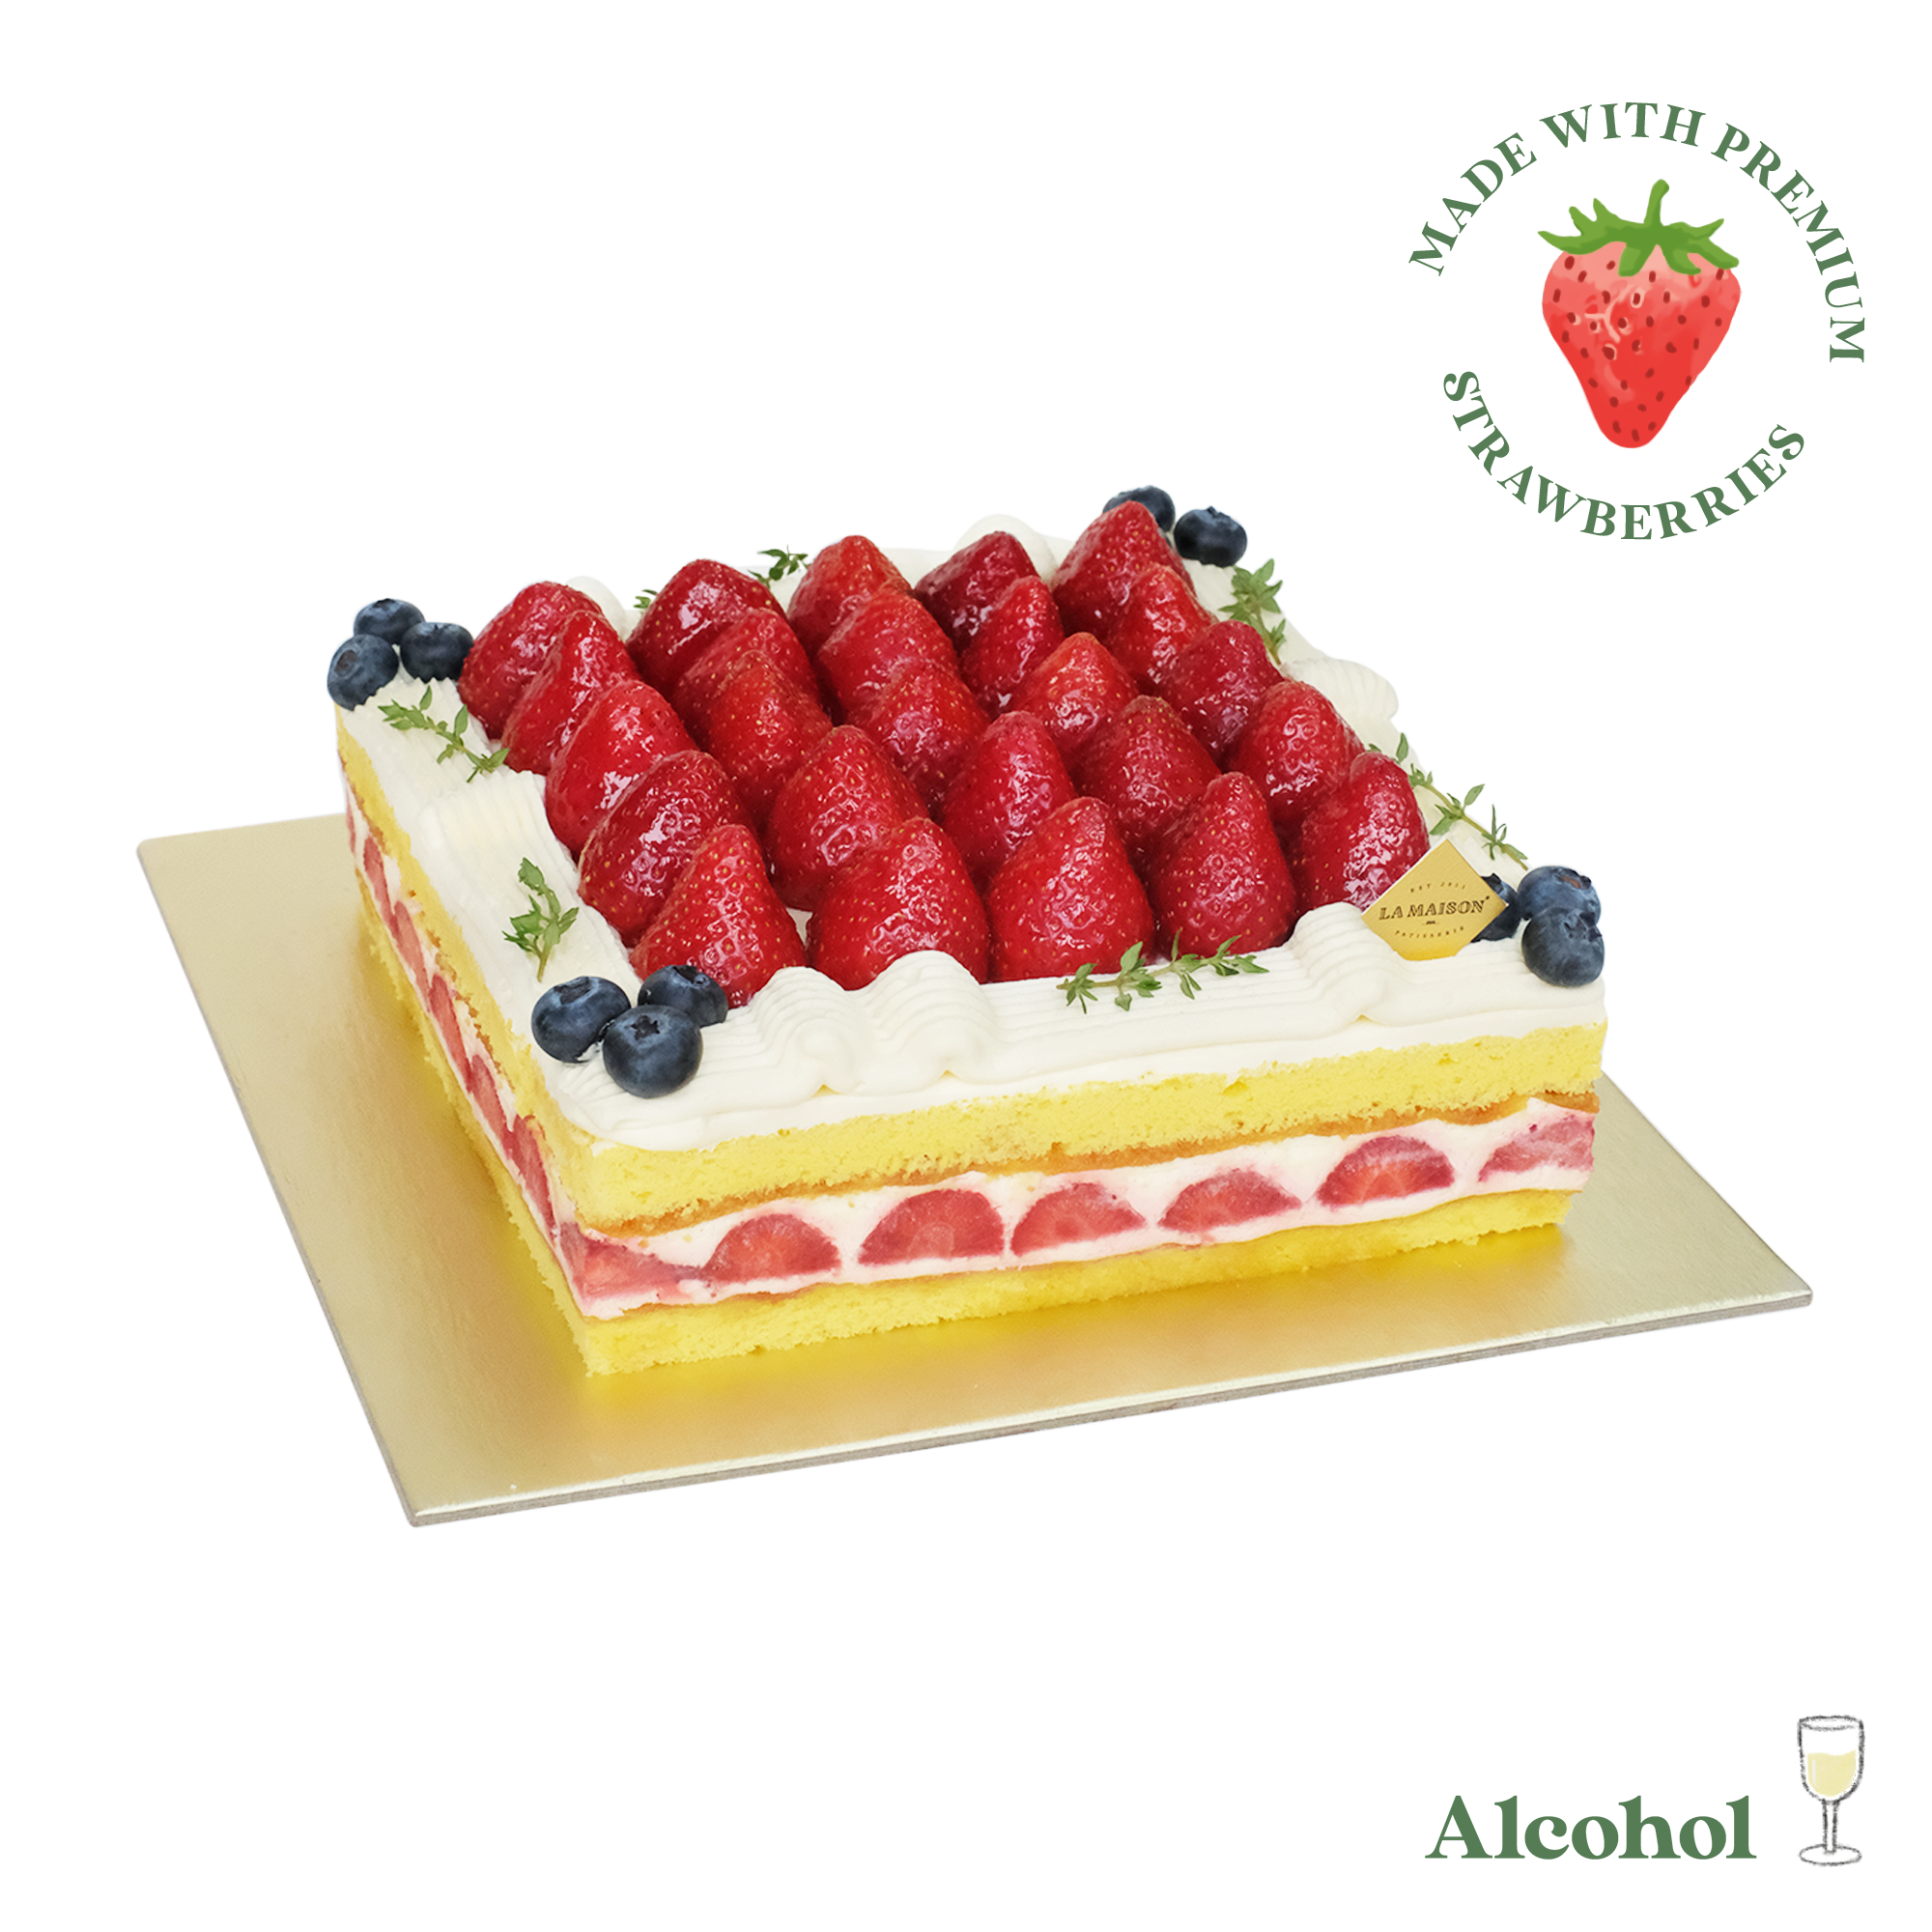 Strawberry Shortcake (JKT)